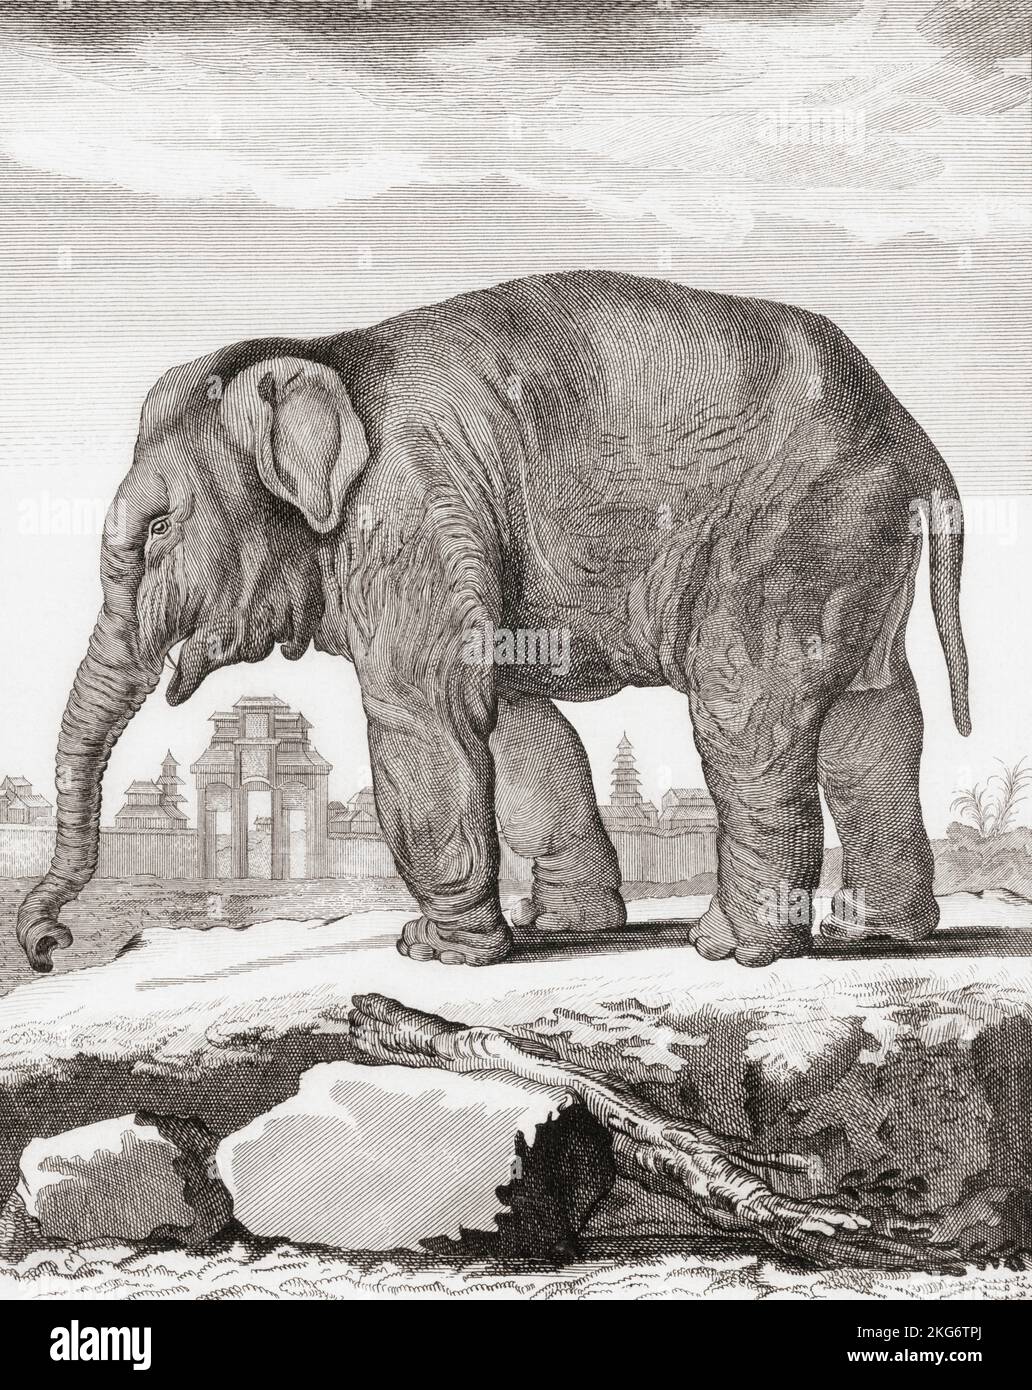 Elefantenweibchen. Nach einem Druck von Barent de Bakker aus dem späten 18.. Jahrhundert nach einer Zeichnung von De Seve. Stockfoto